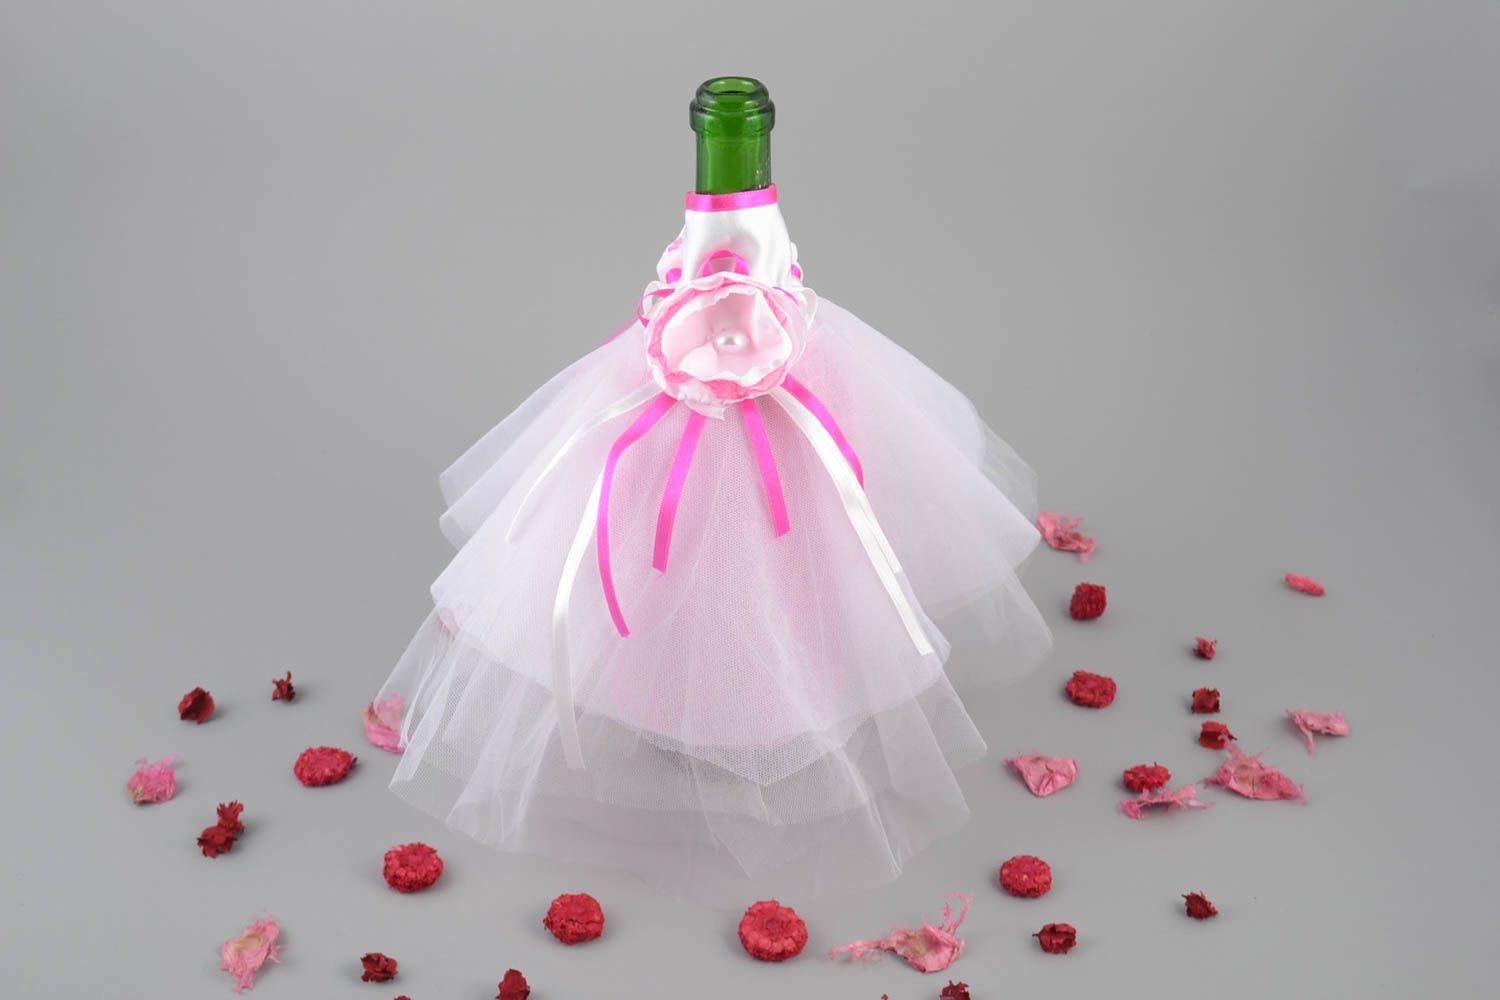 Оригинальная одежда невесты на бутылку шампанского ручной работы декор фото 1